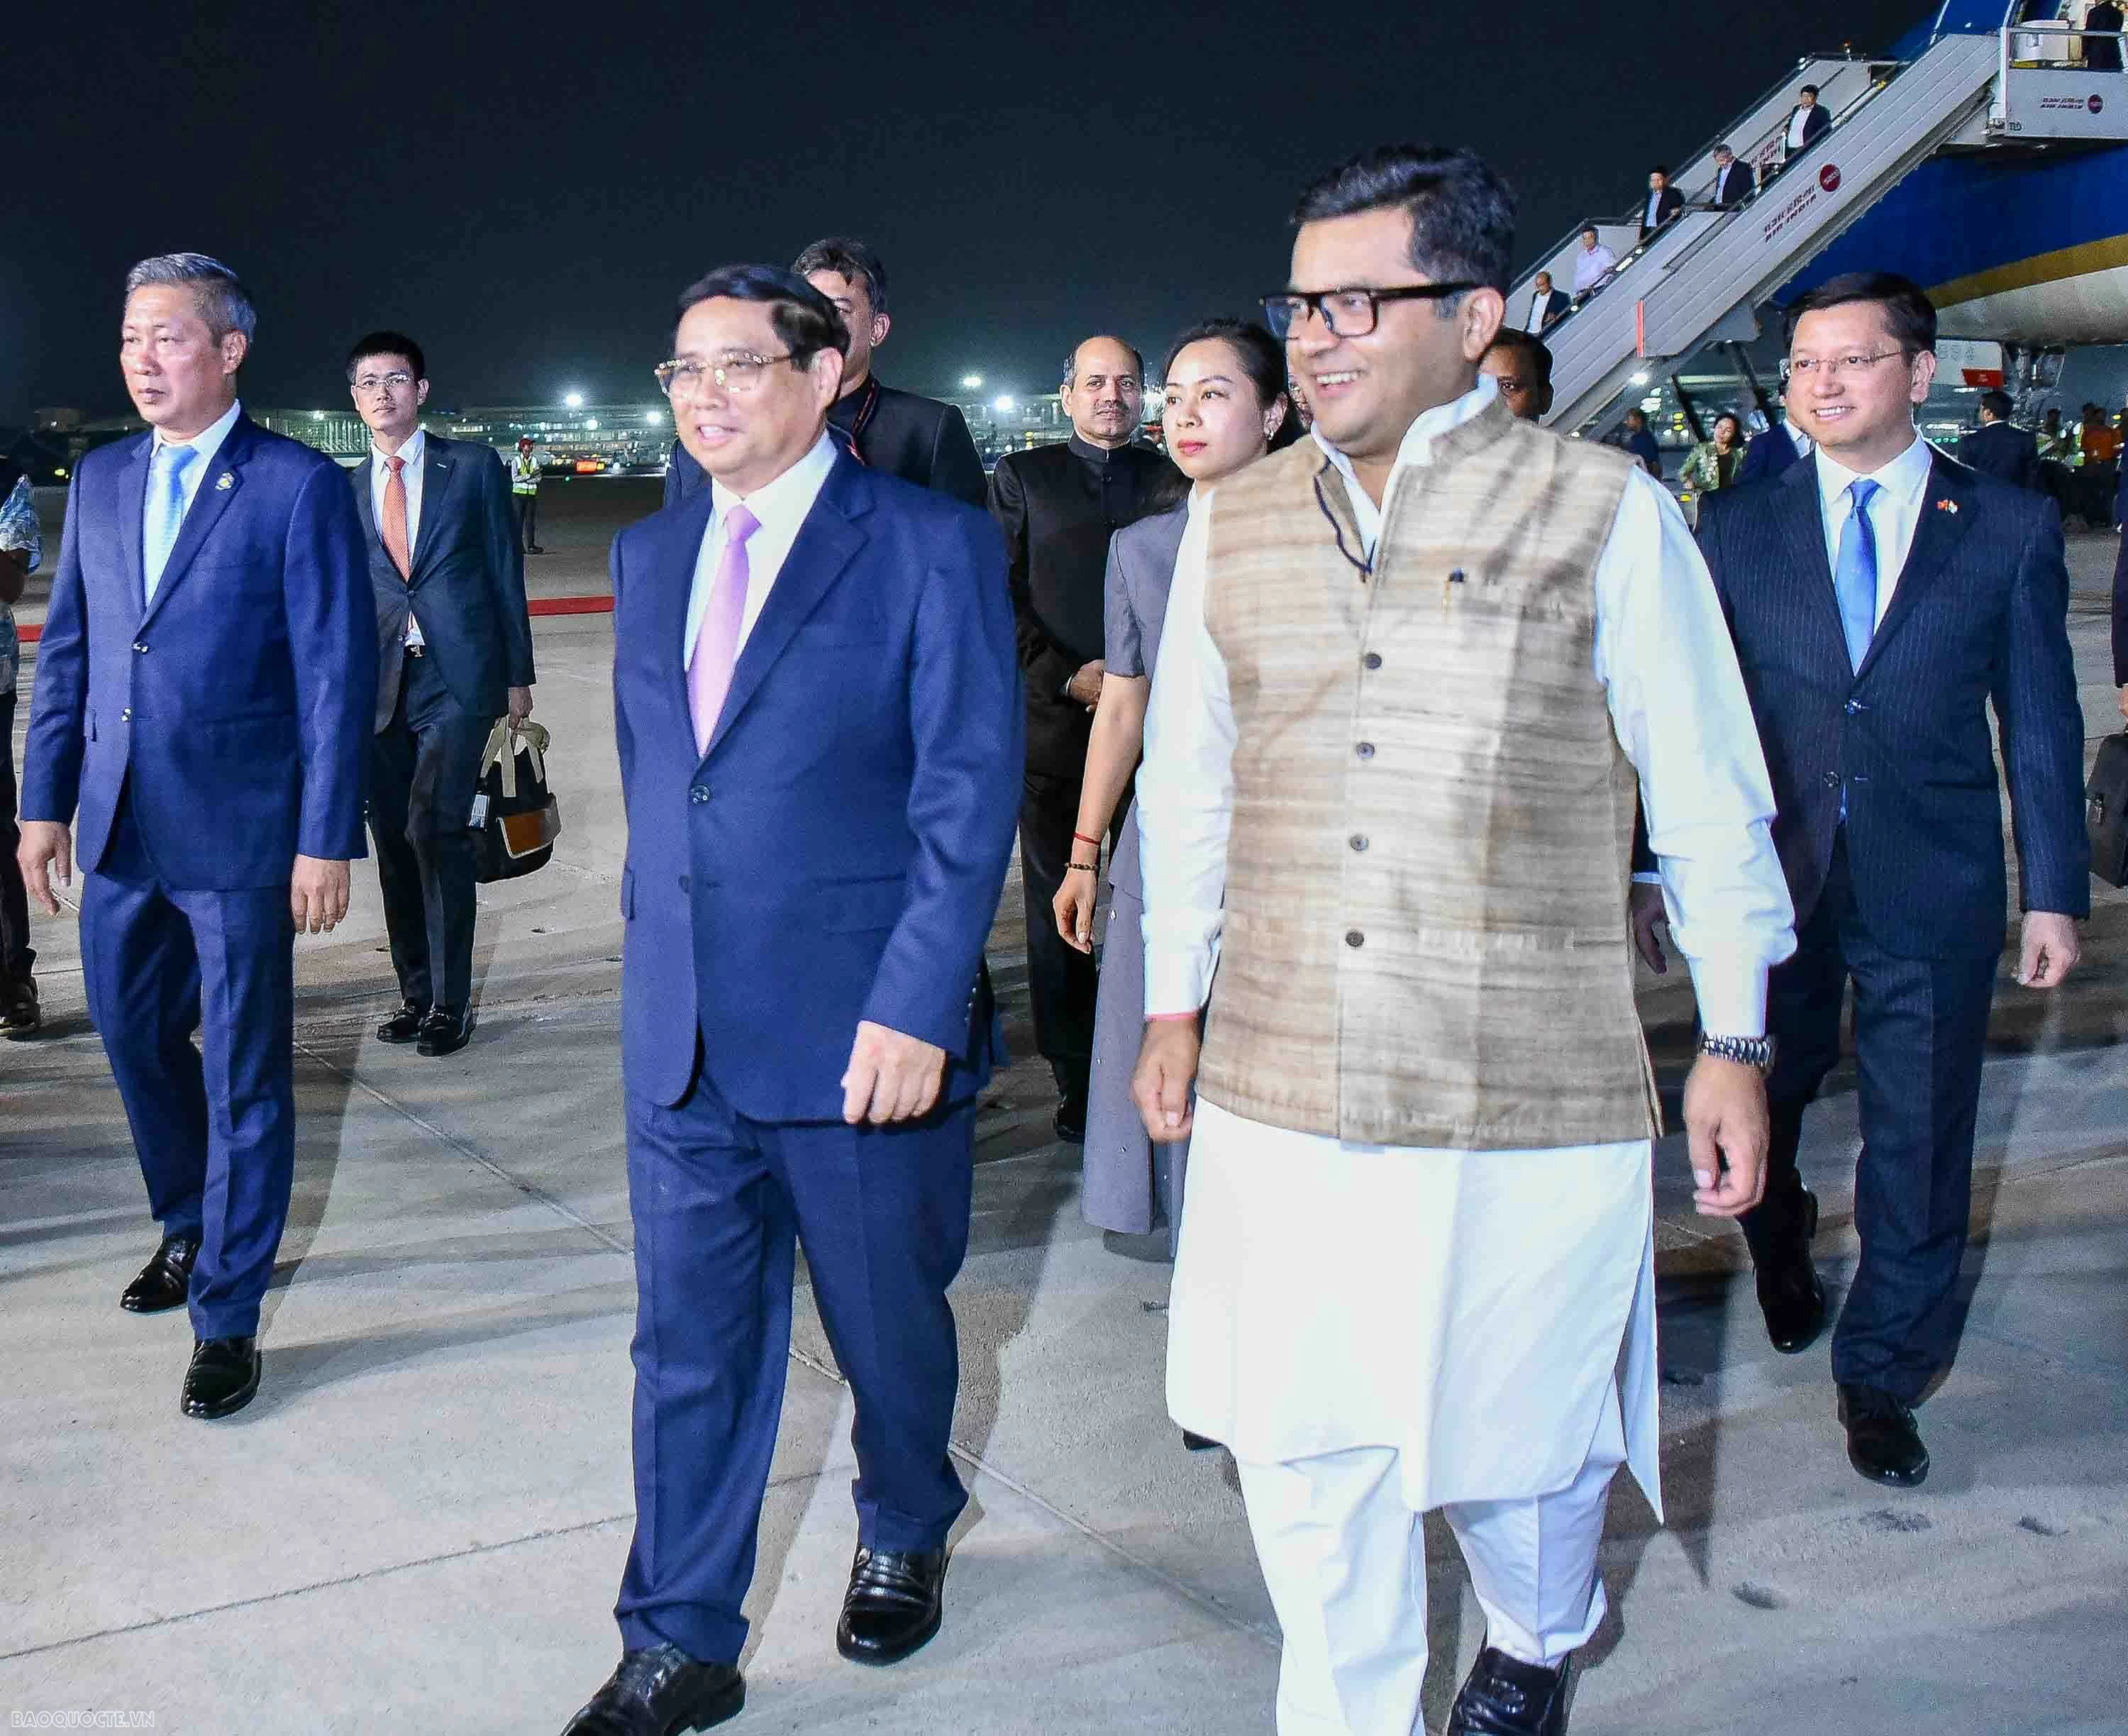 Thủ tướng đến sân bay quân sự Palam, bắt đầu chuyến thăm cấp Nhà nước Ấn Độ